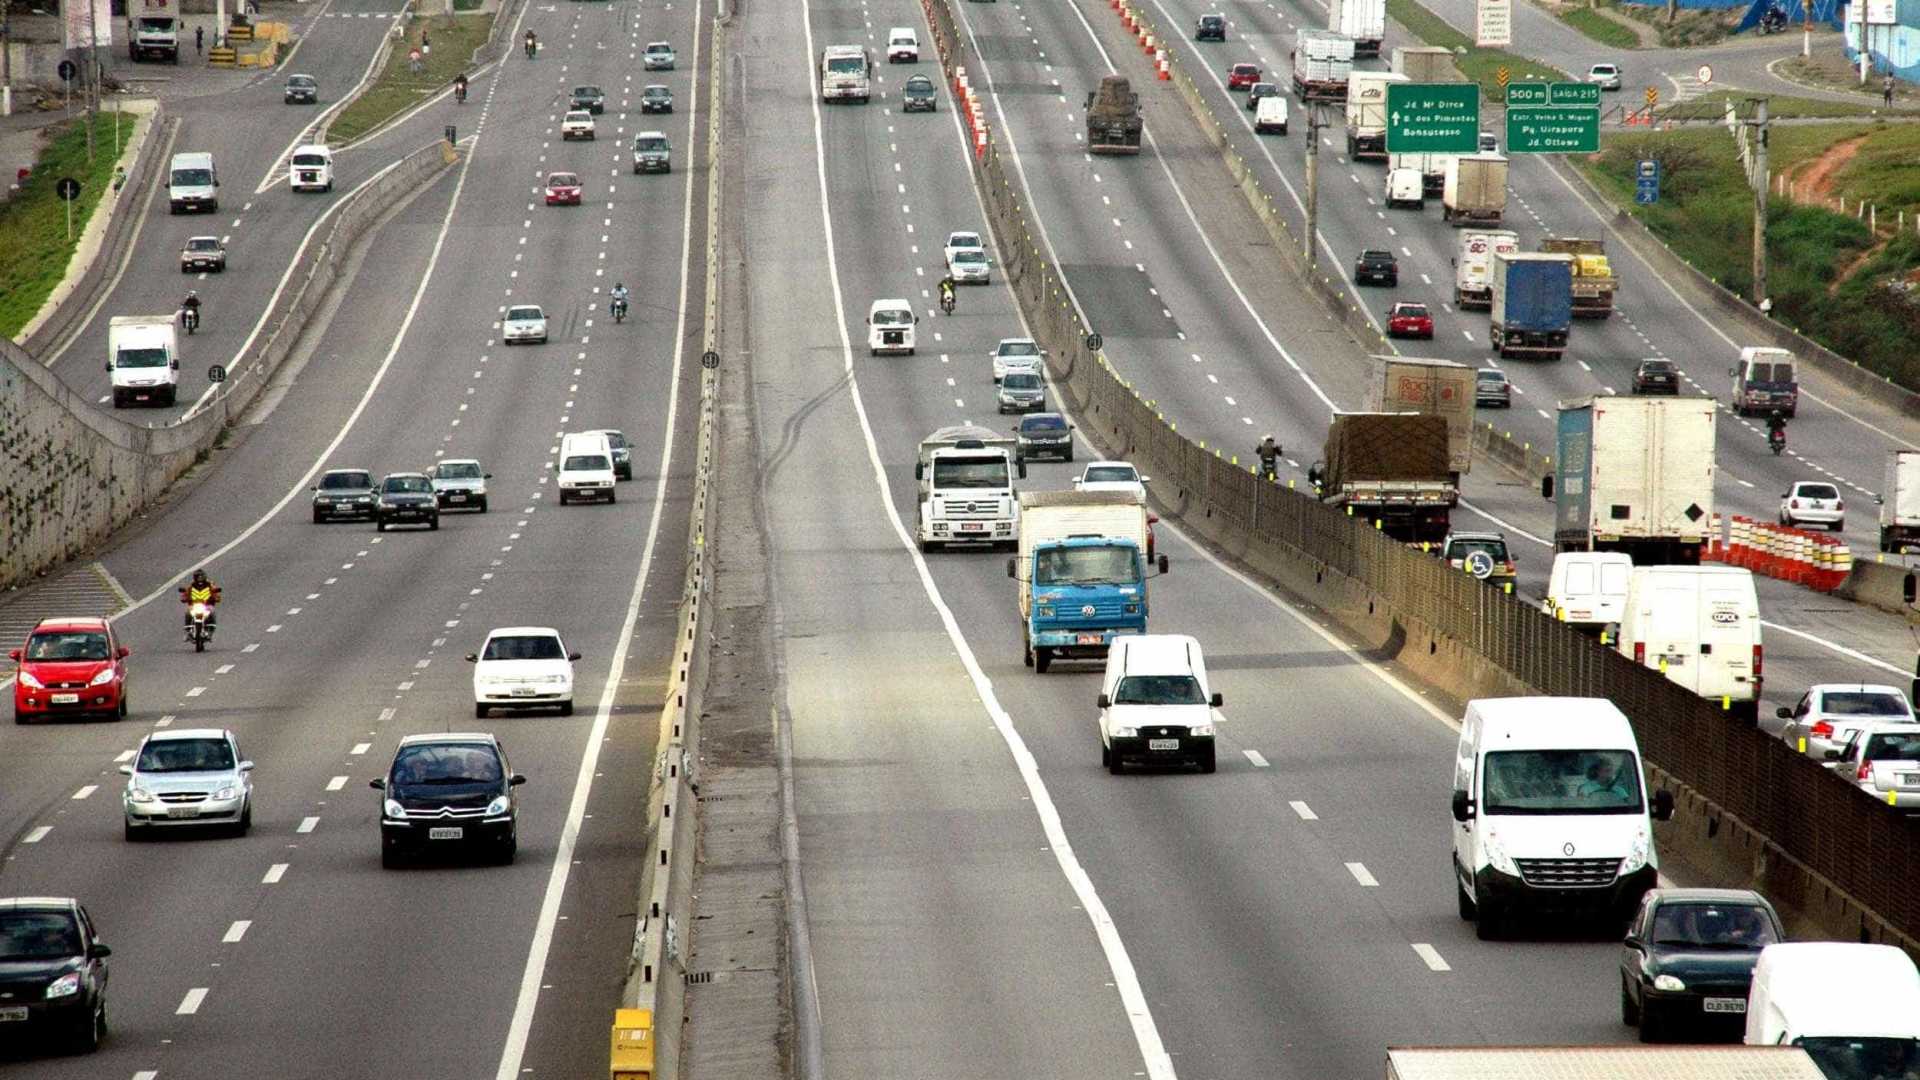 Sem verba para investimentos, governo fará concessão de rodovias